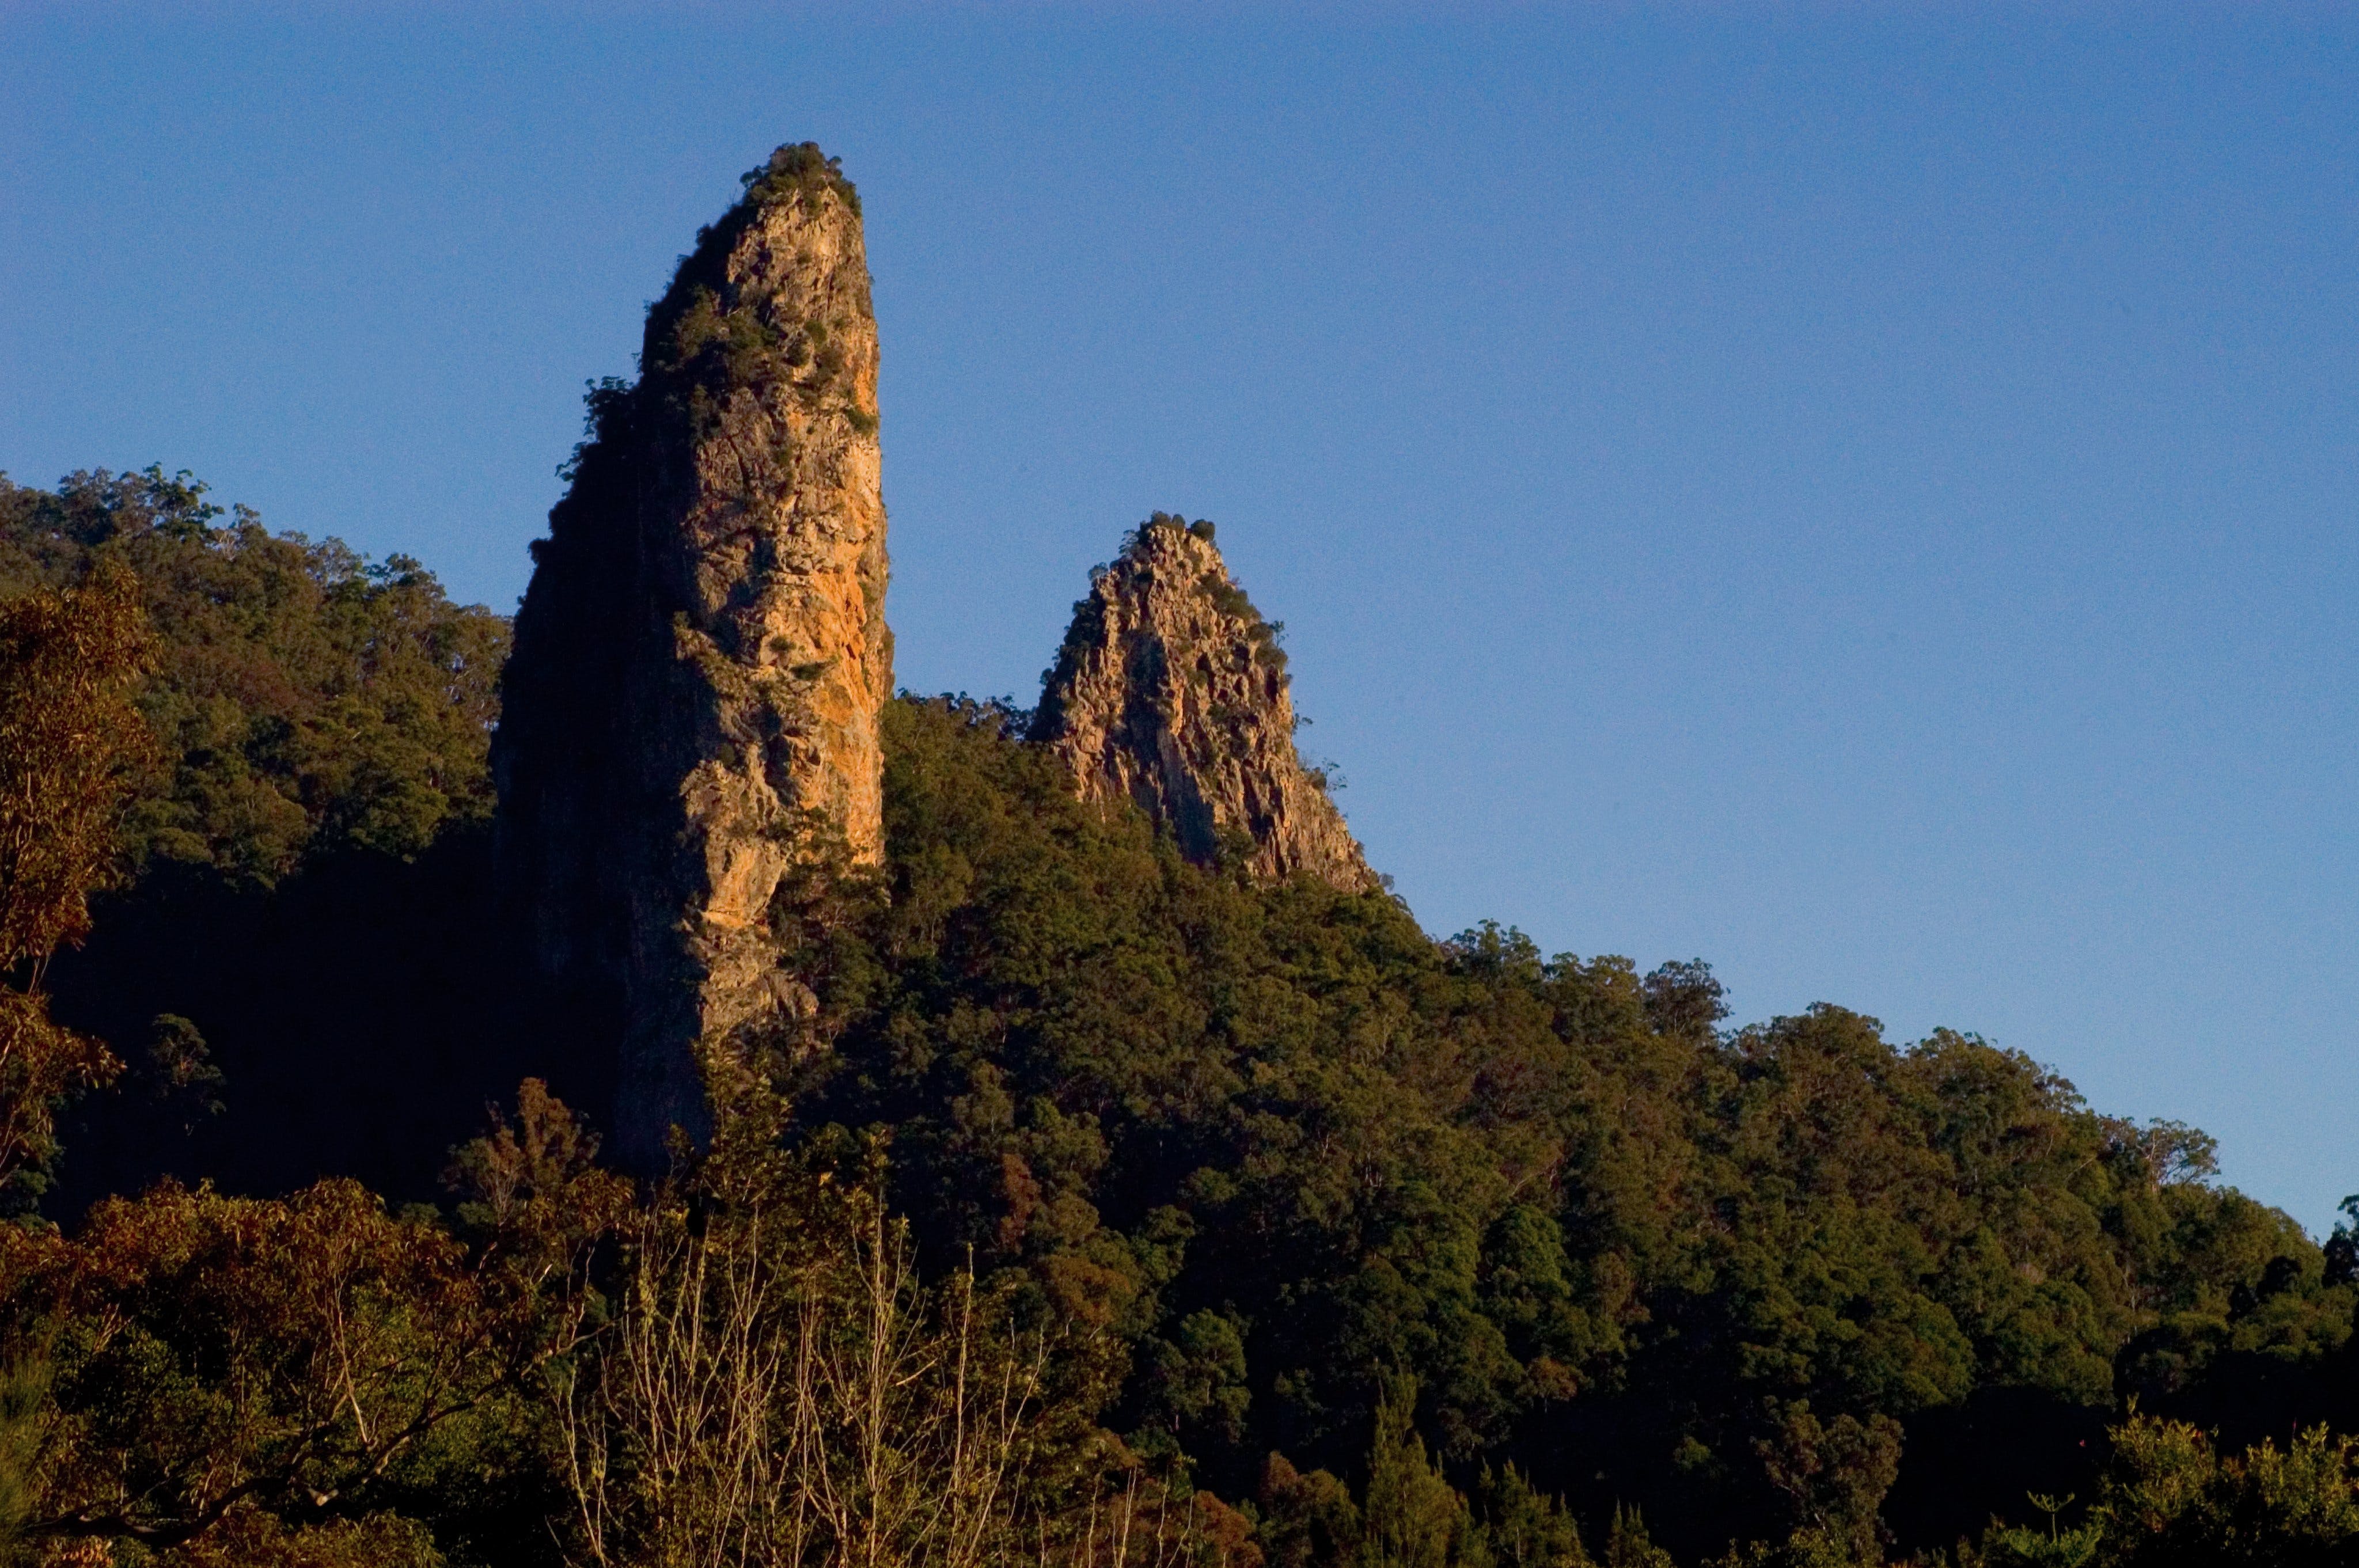 Nimbin Rocks - Tourism Adelaide